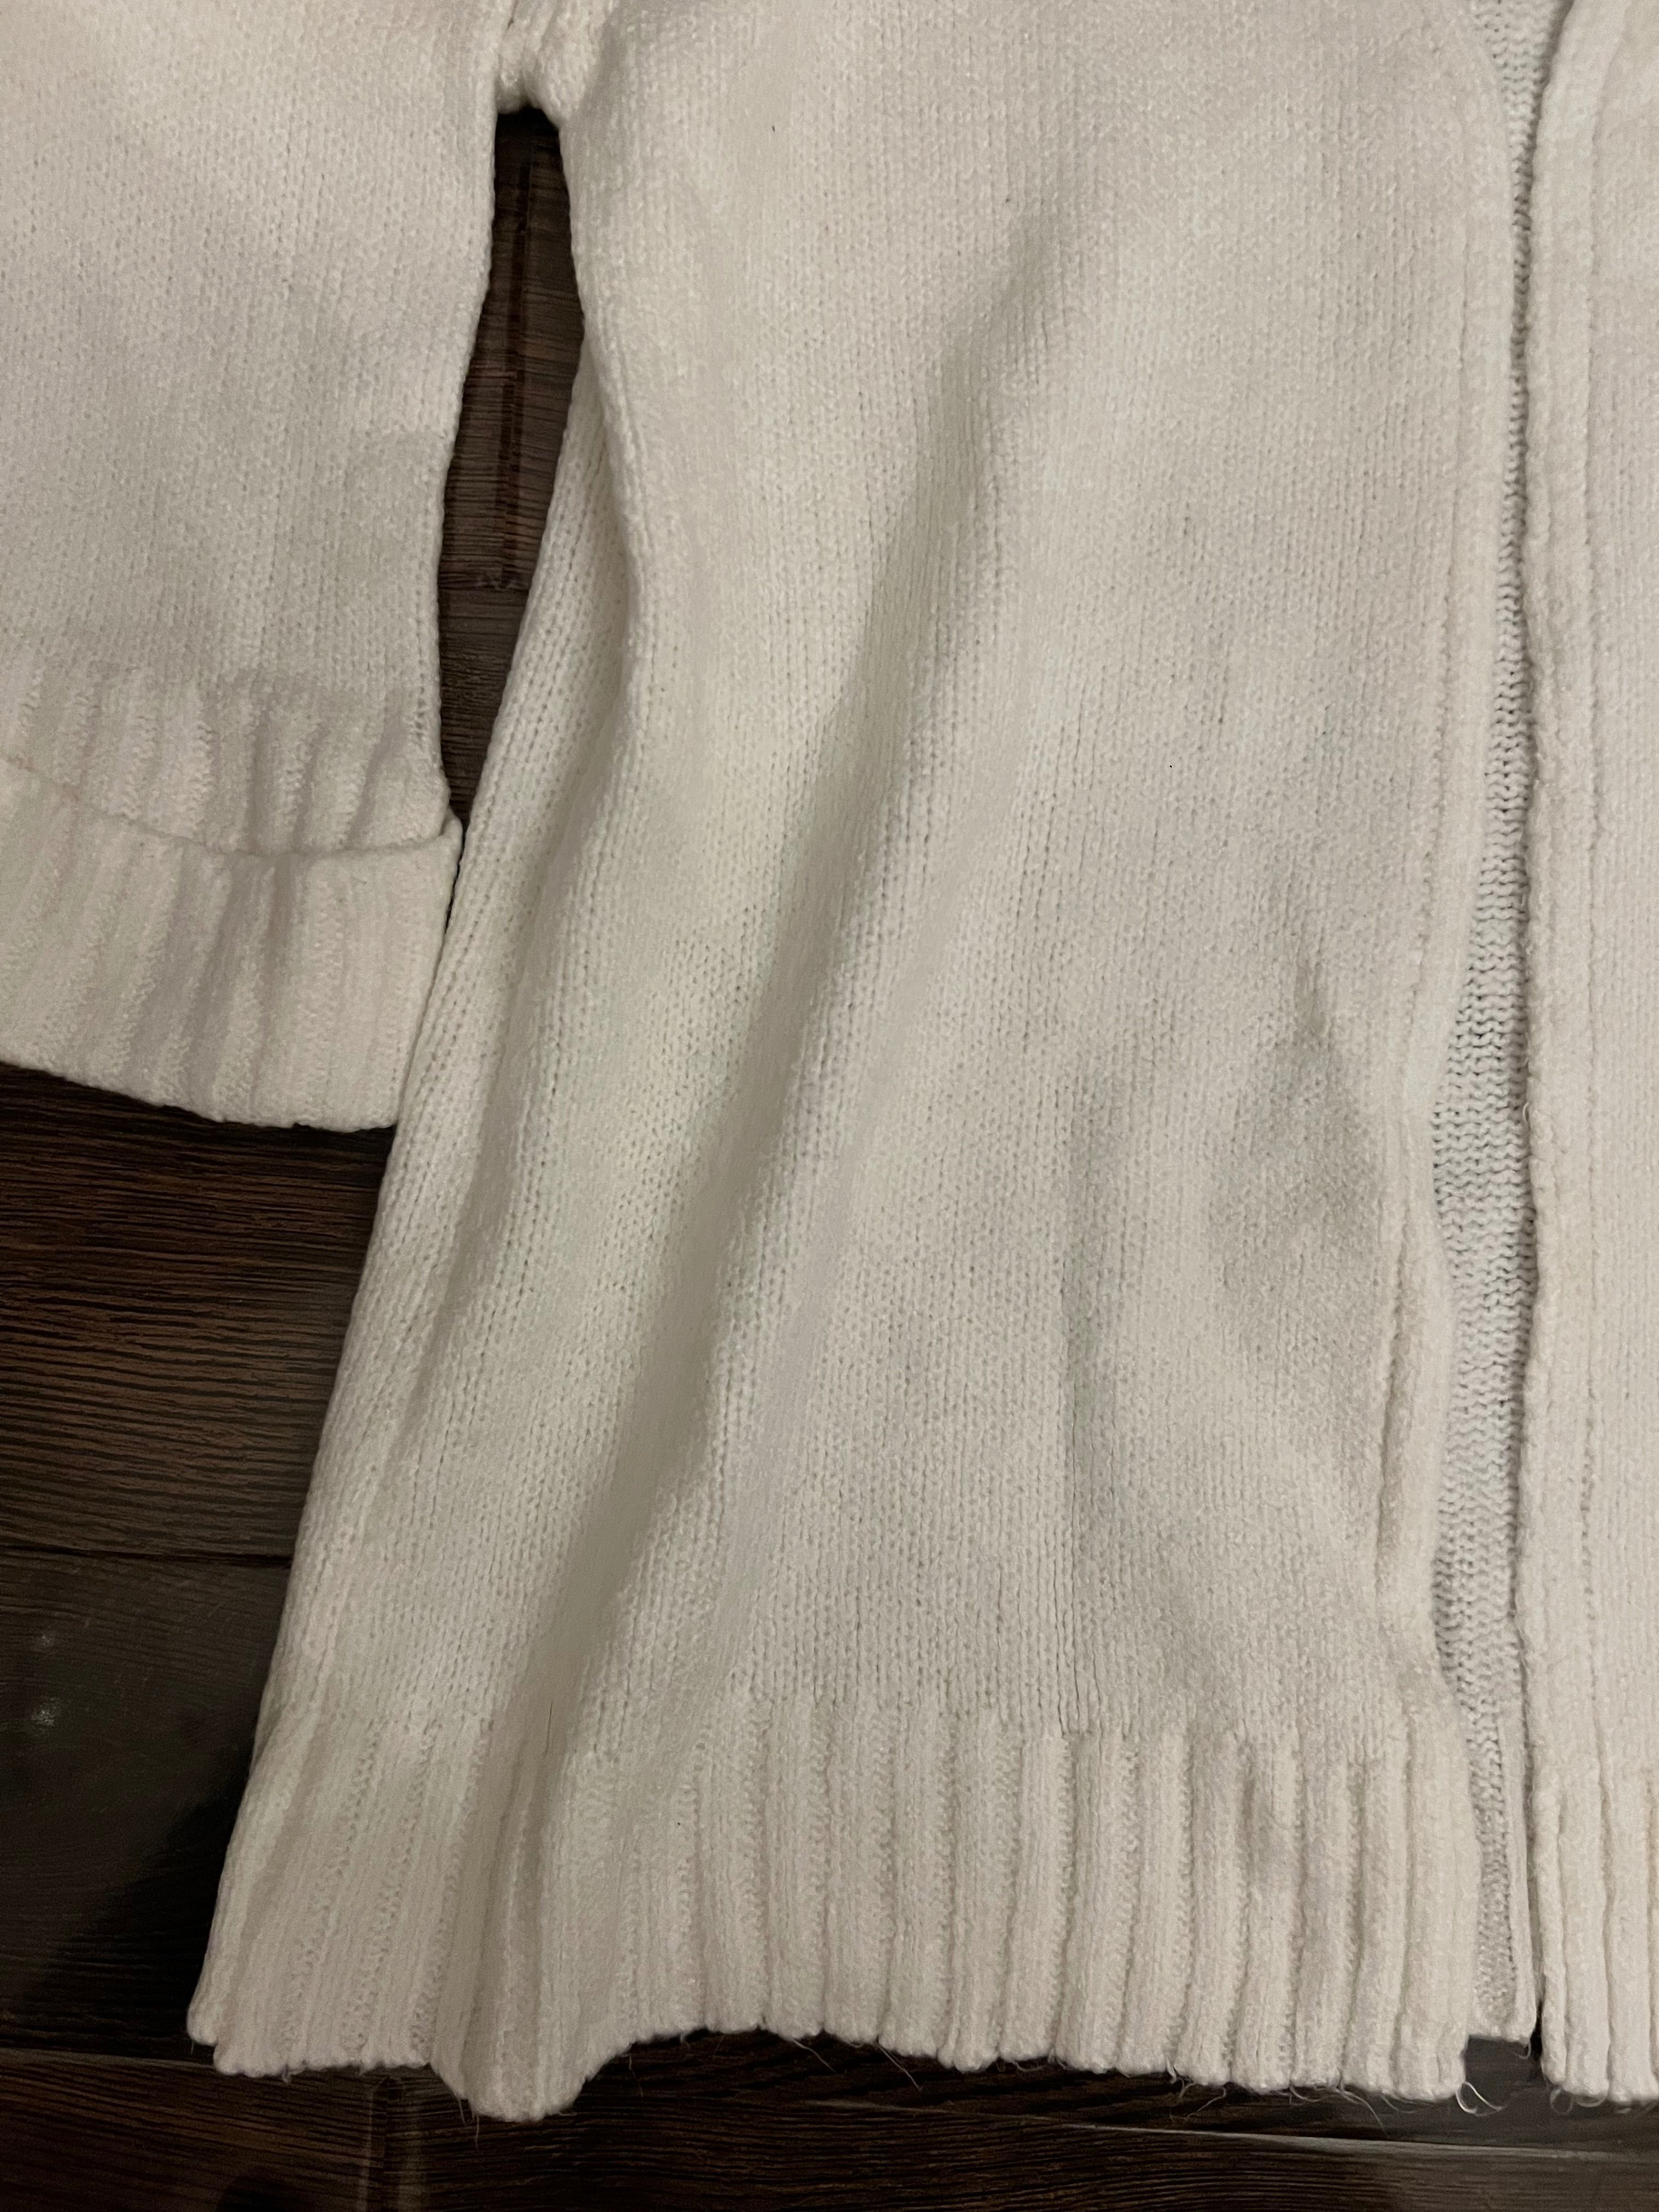 Кардиган кофта белая крупно вязанка новая М размер